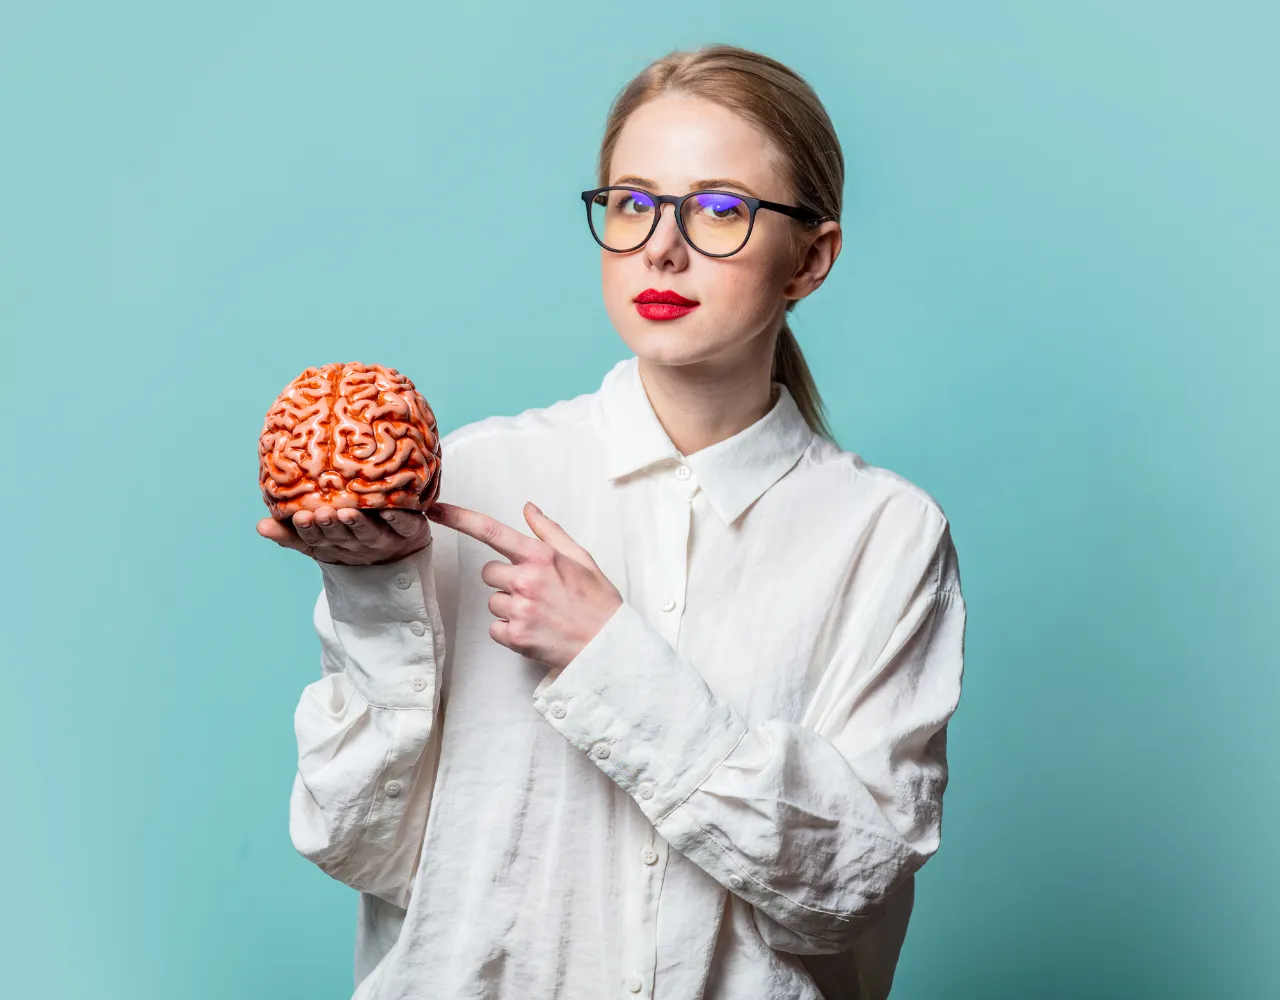 Mulher de óculos segurando um modelo de cérebro e apontando para ele.